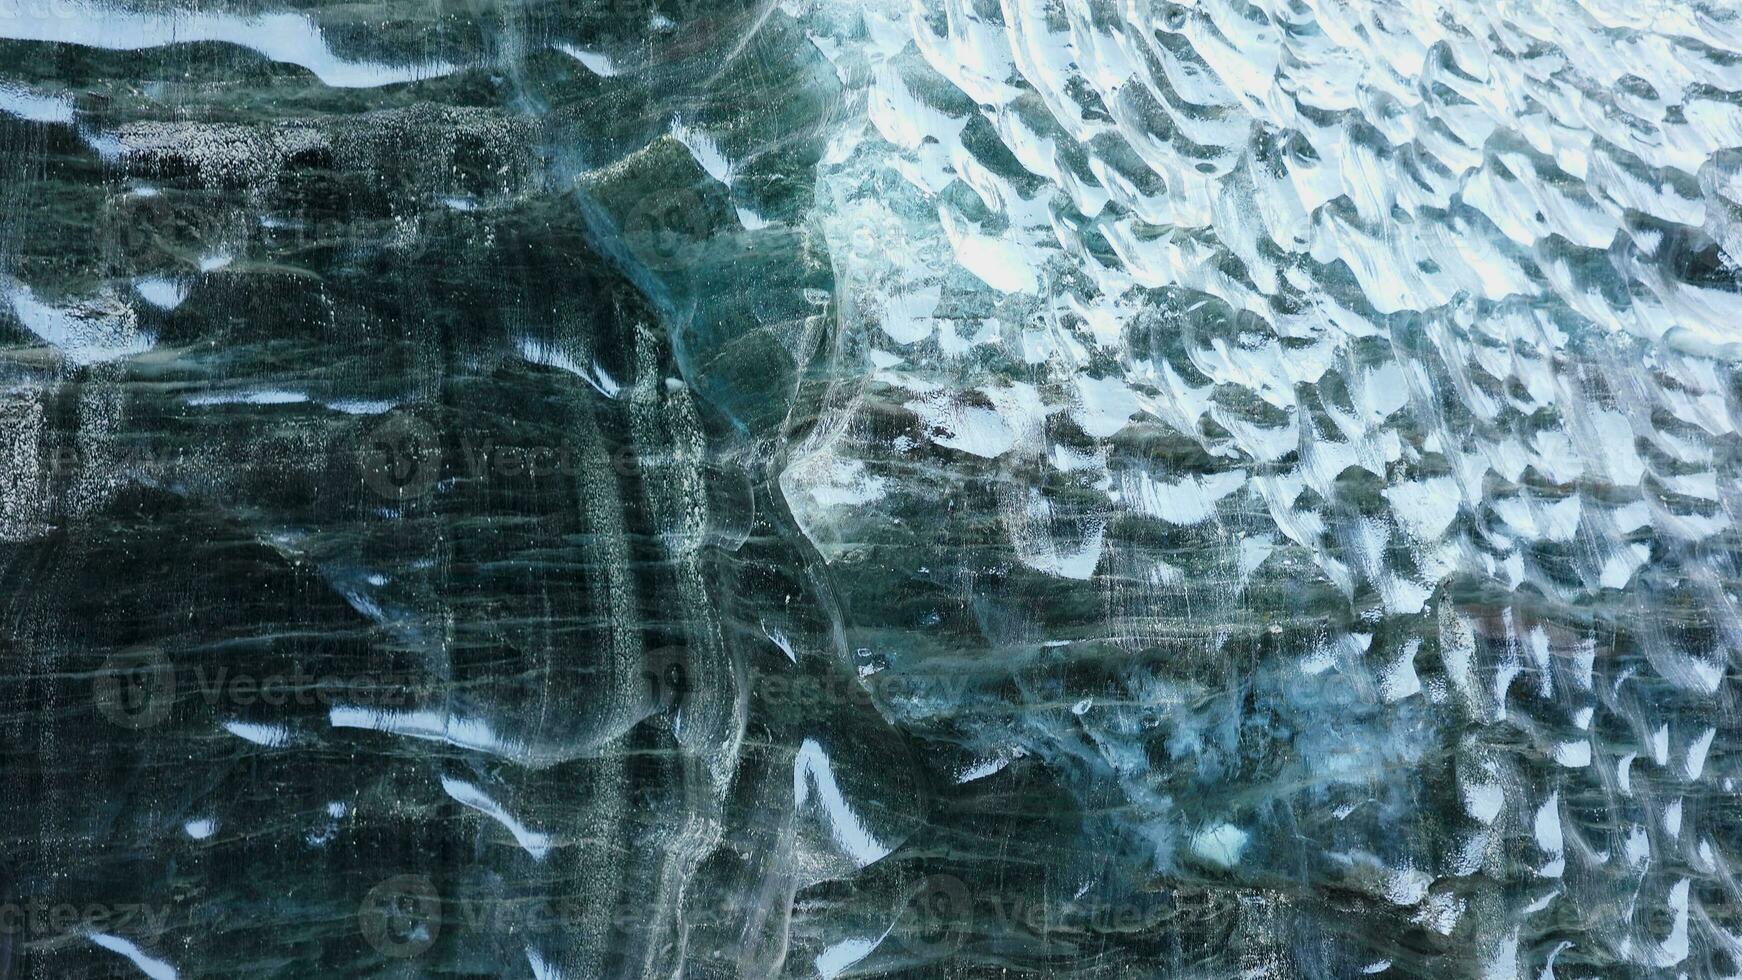 Blau Eis Masse im vatnajokull Gletscherspalte, majestätisch transparent Eis Gletscher im Island. Innerhalb Eis Höhlen mit geknackt Eis Blöcke bedeckt im Frost Felsen, nordisch Landschaften. Handheld Schuss. foto